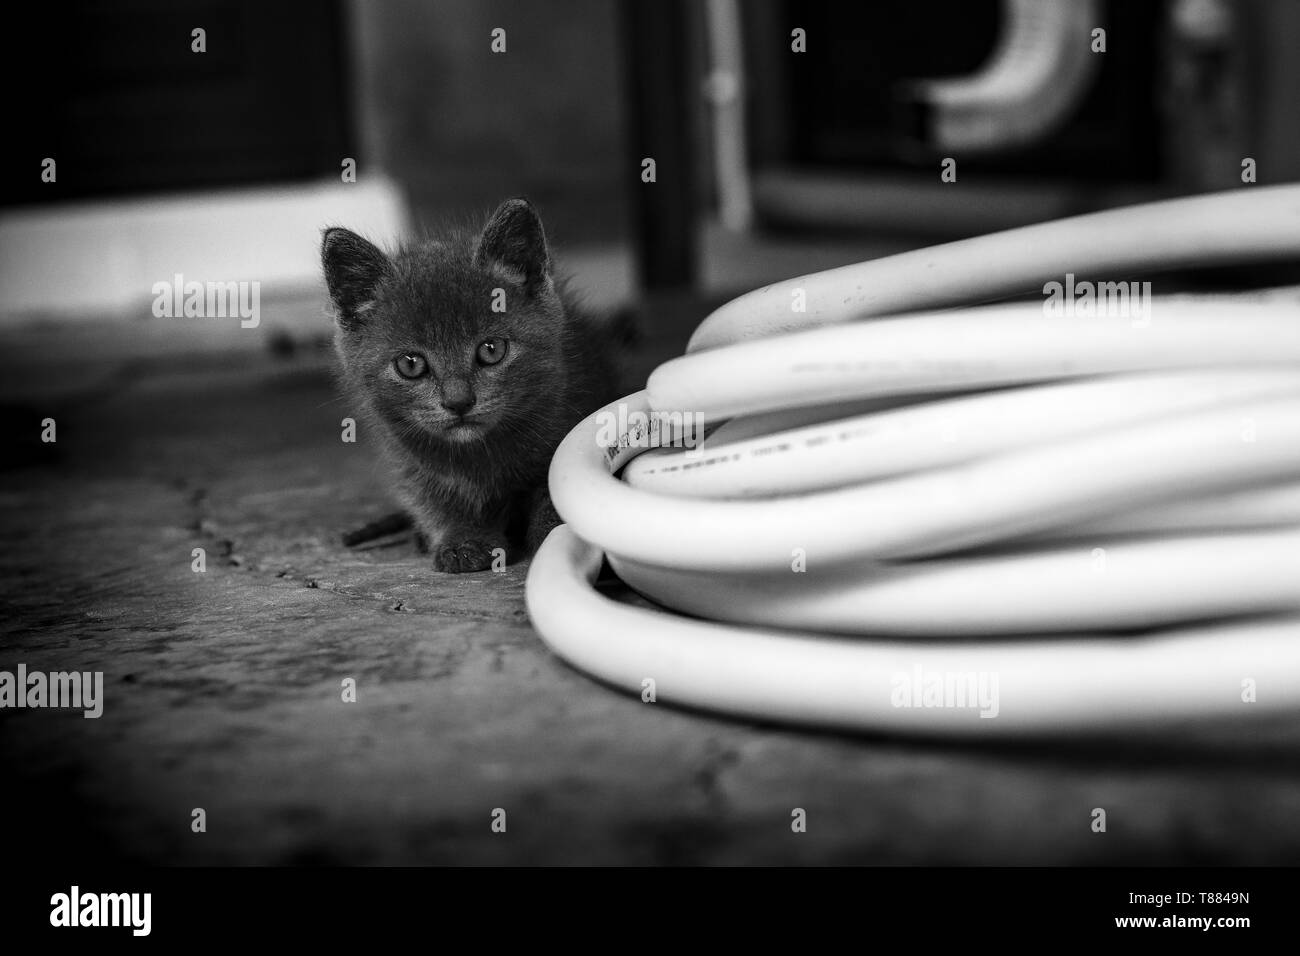 Inoccent Kitten in b&w Stock Photo